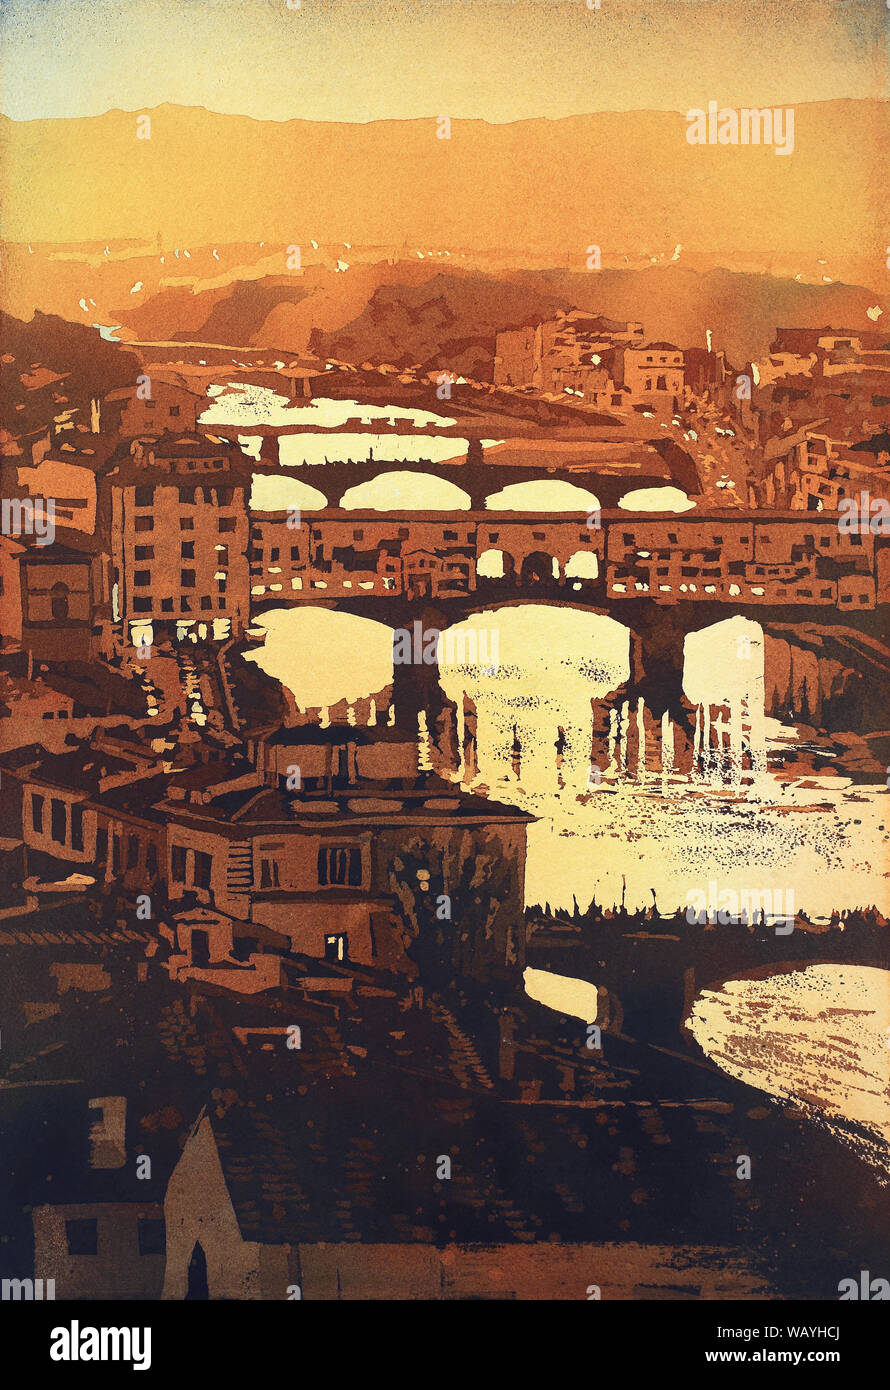 Ponte Vecchio au coucher du soleil dans la ville médiévale de Florence, Italie pendant la nuit. Florence Italie aquarelle fine art Ponte Vecchio imprimer Banque D'Images